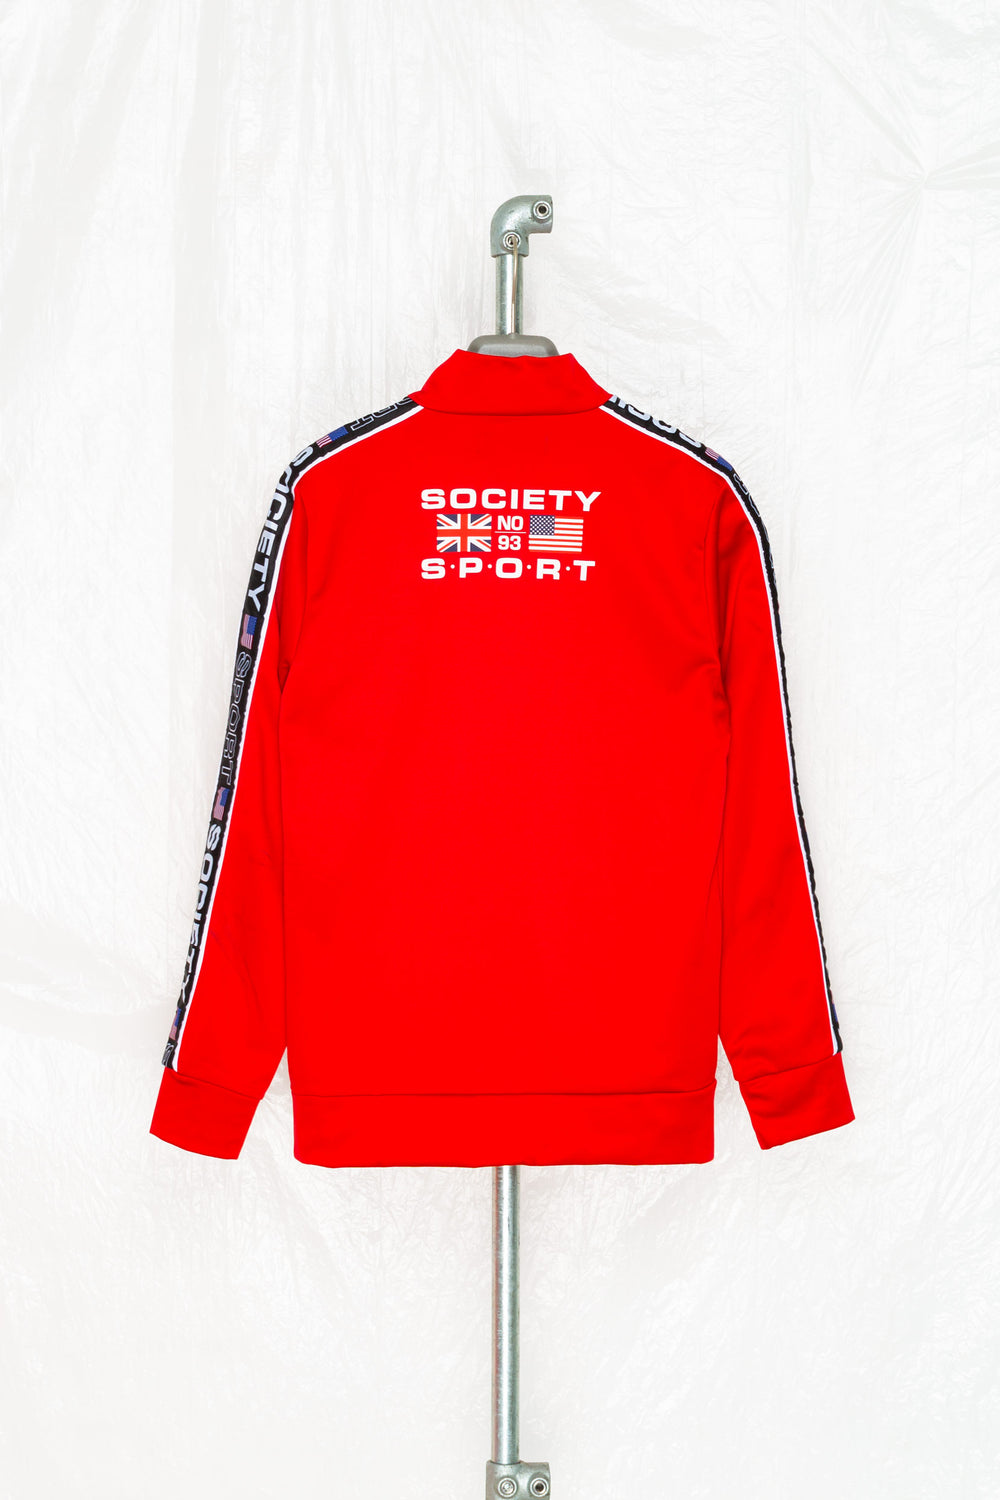 Society sport. Society Sport куртка. Society Sport United States мужская одежда.